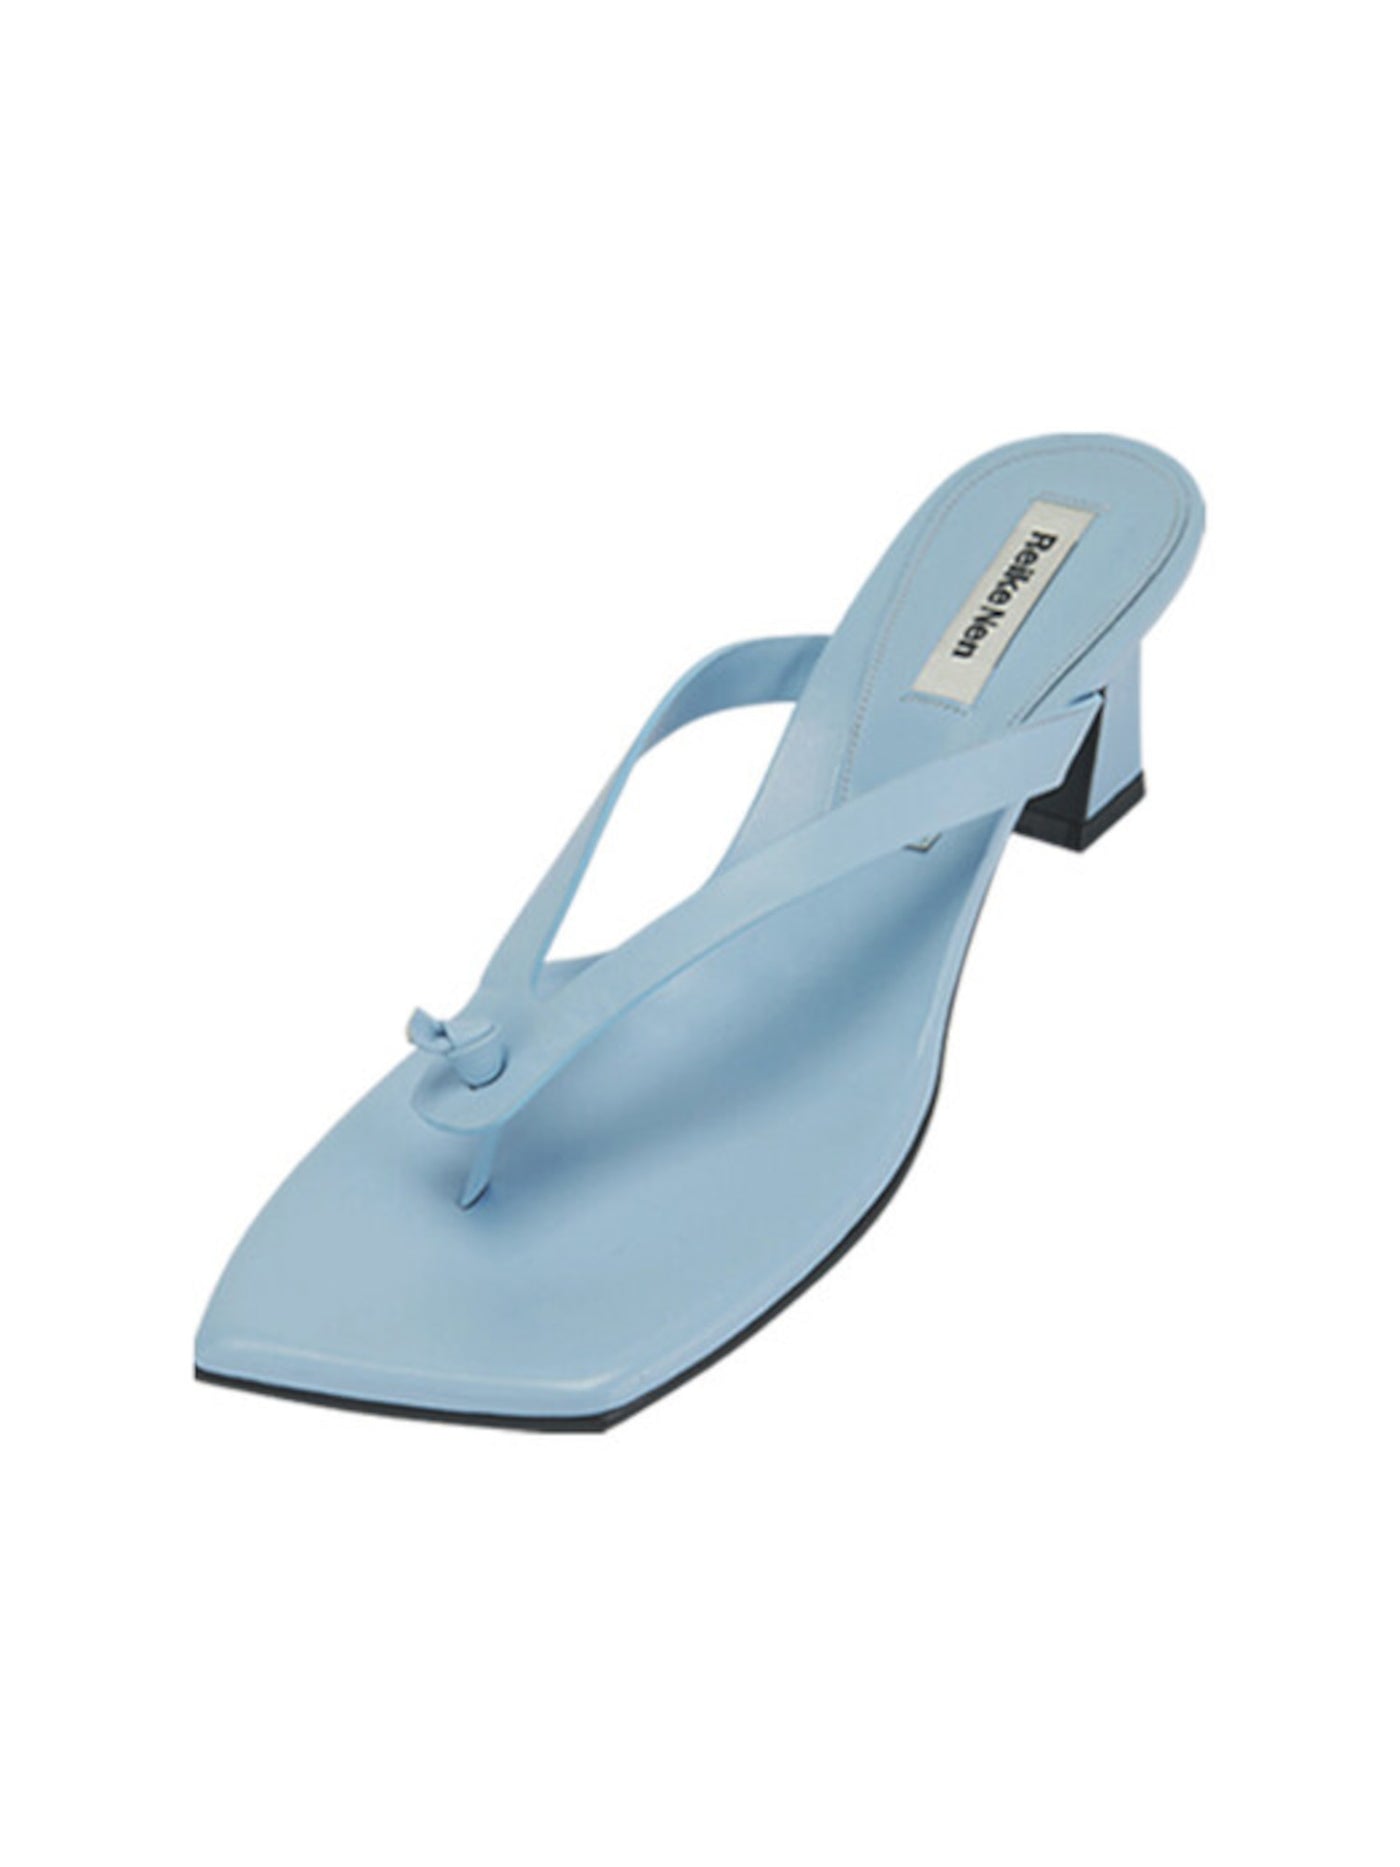 REIKE NEN Womens Light Blue Padded Square Toe Slip On Leather Dress Flip Flop Sandal 39